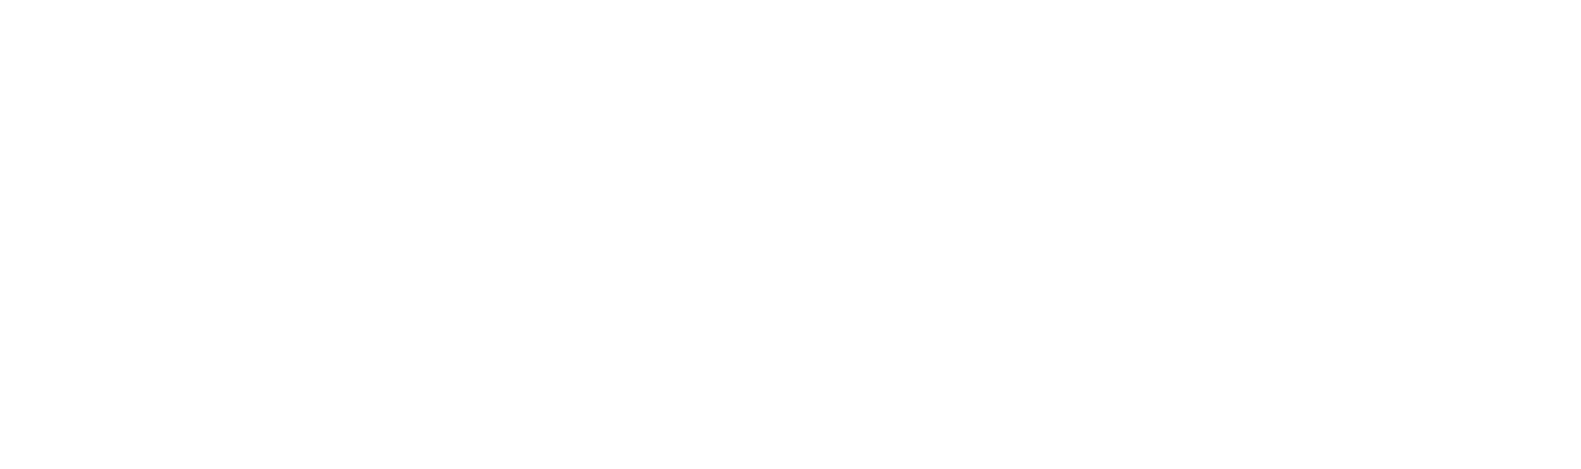 Klaviyo logo large for dark backgrounds (transparent PNG)